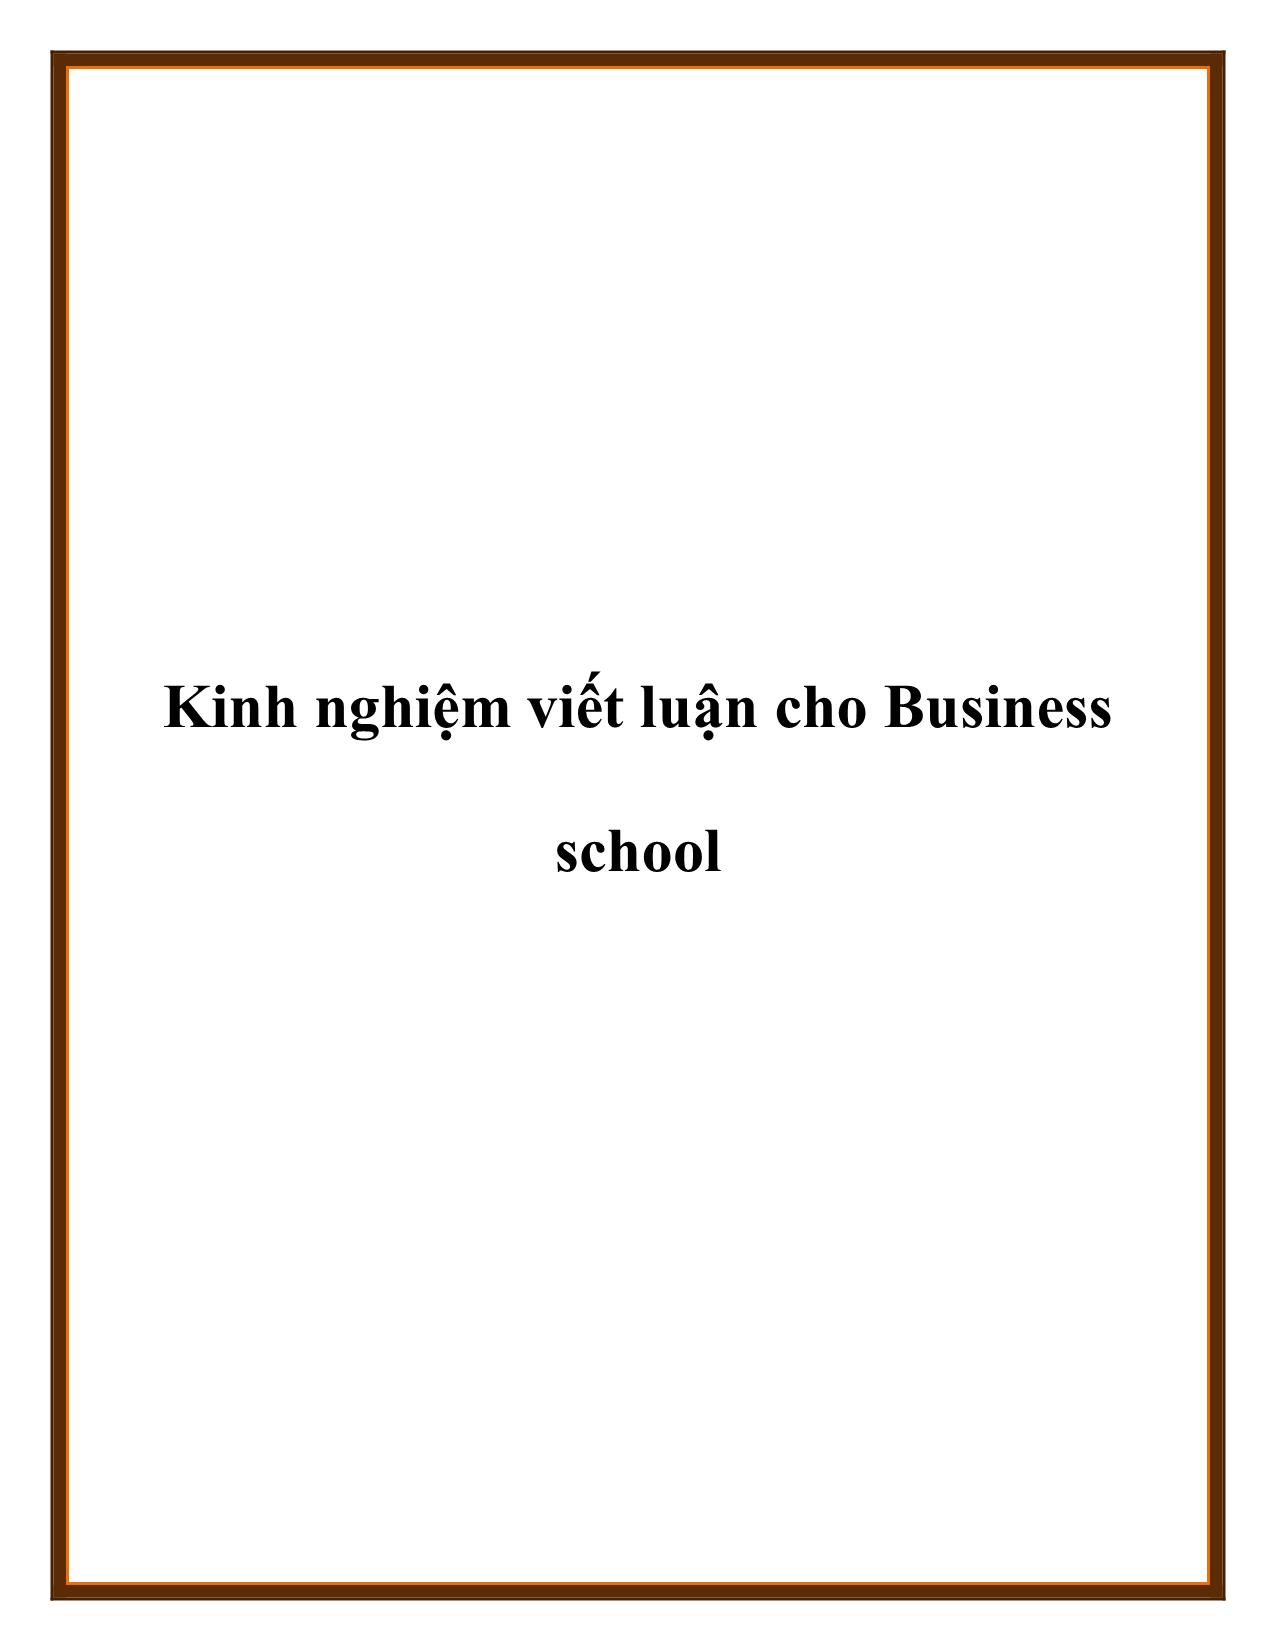 Kinh nghiệm viết luận cho Business school trang 1